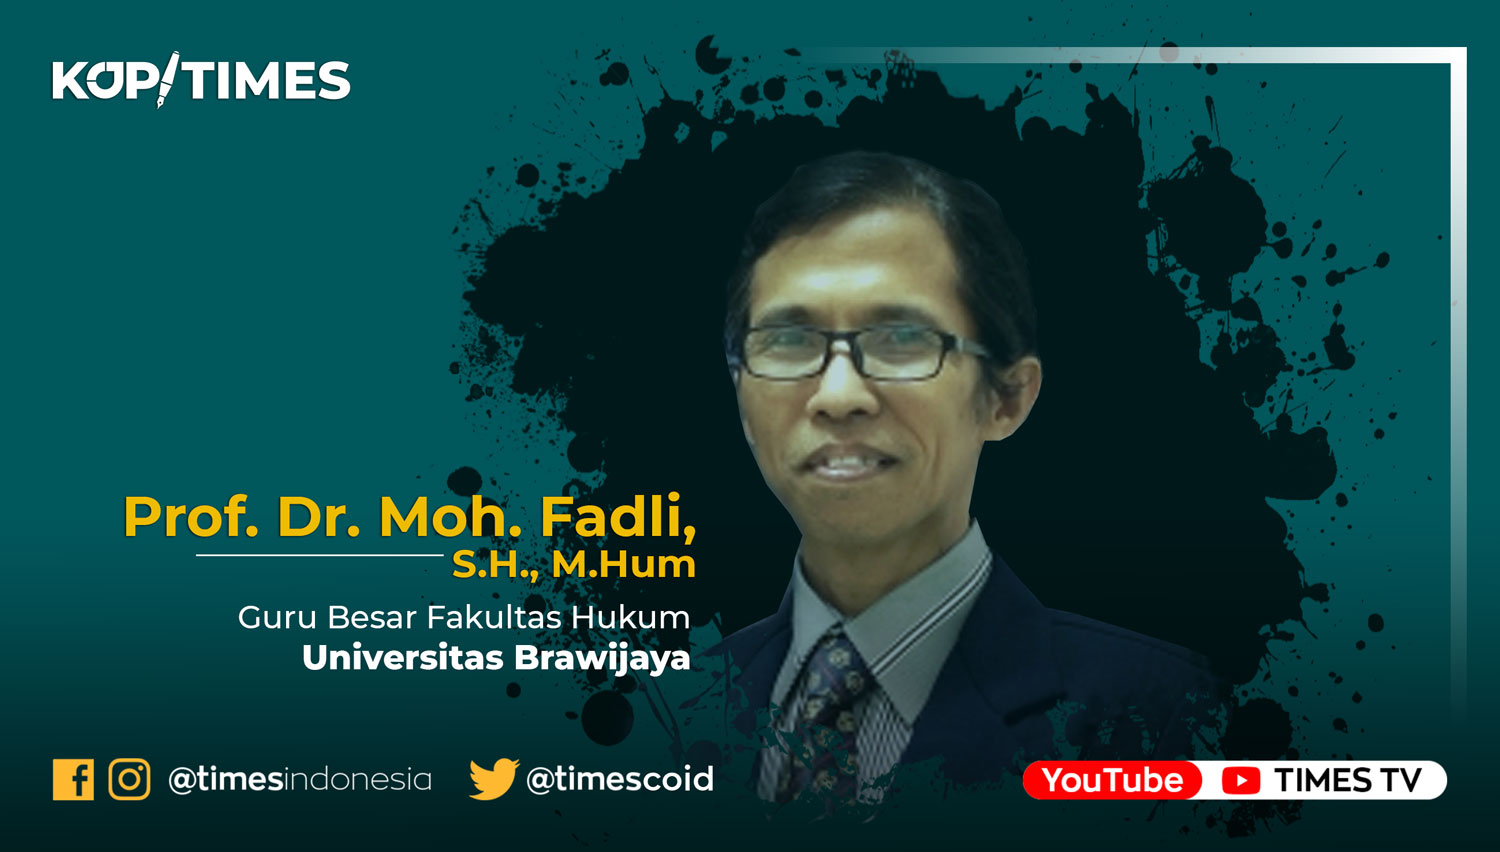 Prof. Dr. Moh. Fadli, S.H., M.Hum, Guru Besar Fakultas Hukum Universitas Brawijaya